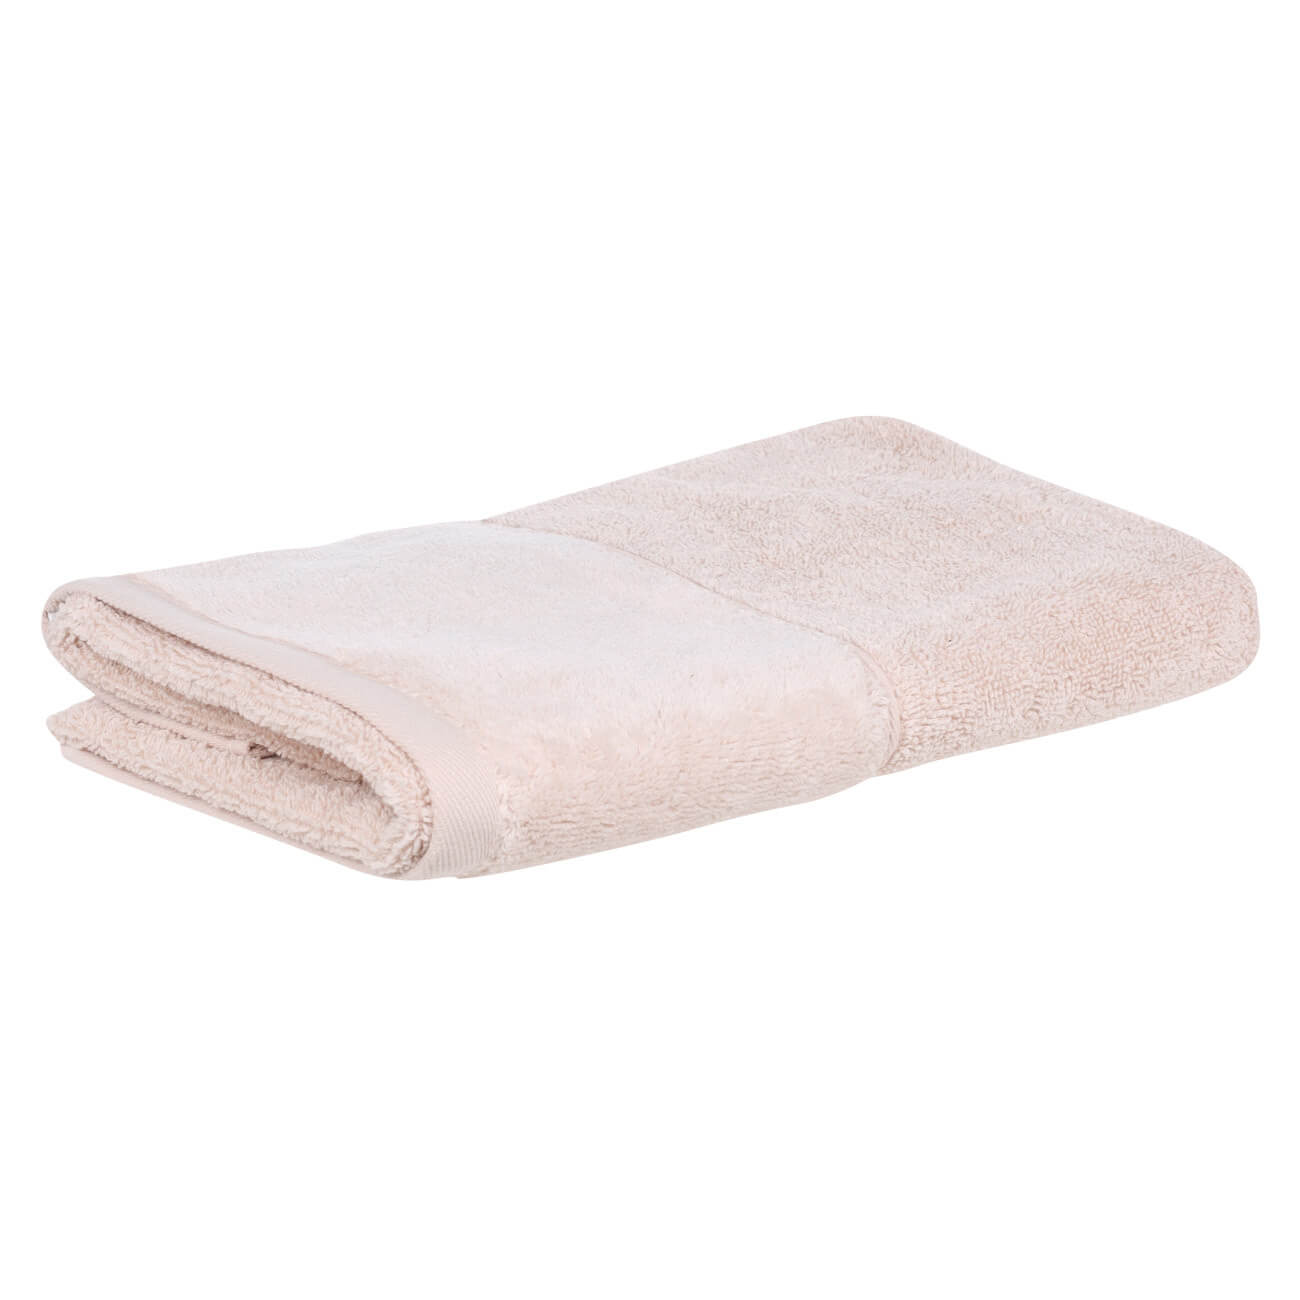 Полотенце, 50х90 см, хлопок, бежевое, Velvet touch полотенце eumenia 70x140 см бежевое